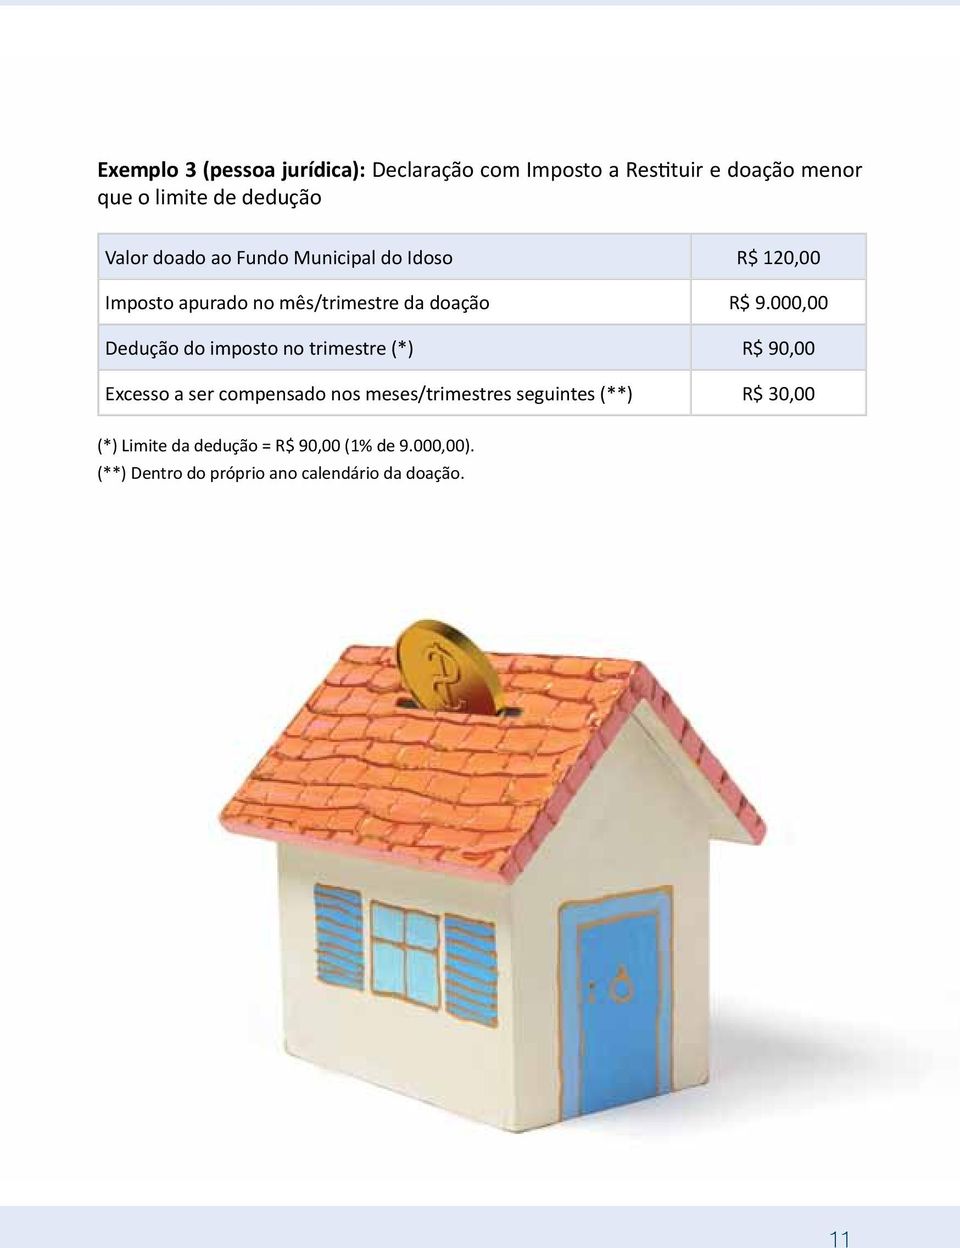 000,00 Dedução do imposto no trimestre (*) R$ 90,00 Excesso a ser compensado nos meses/trimestres